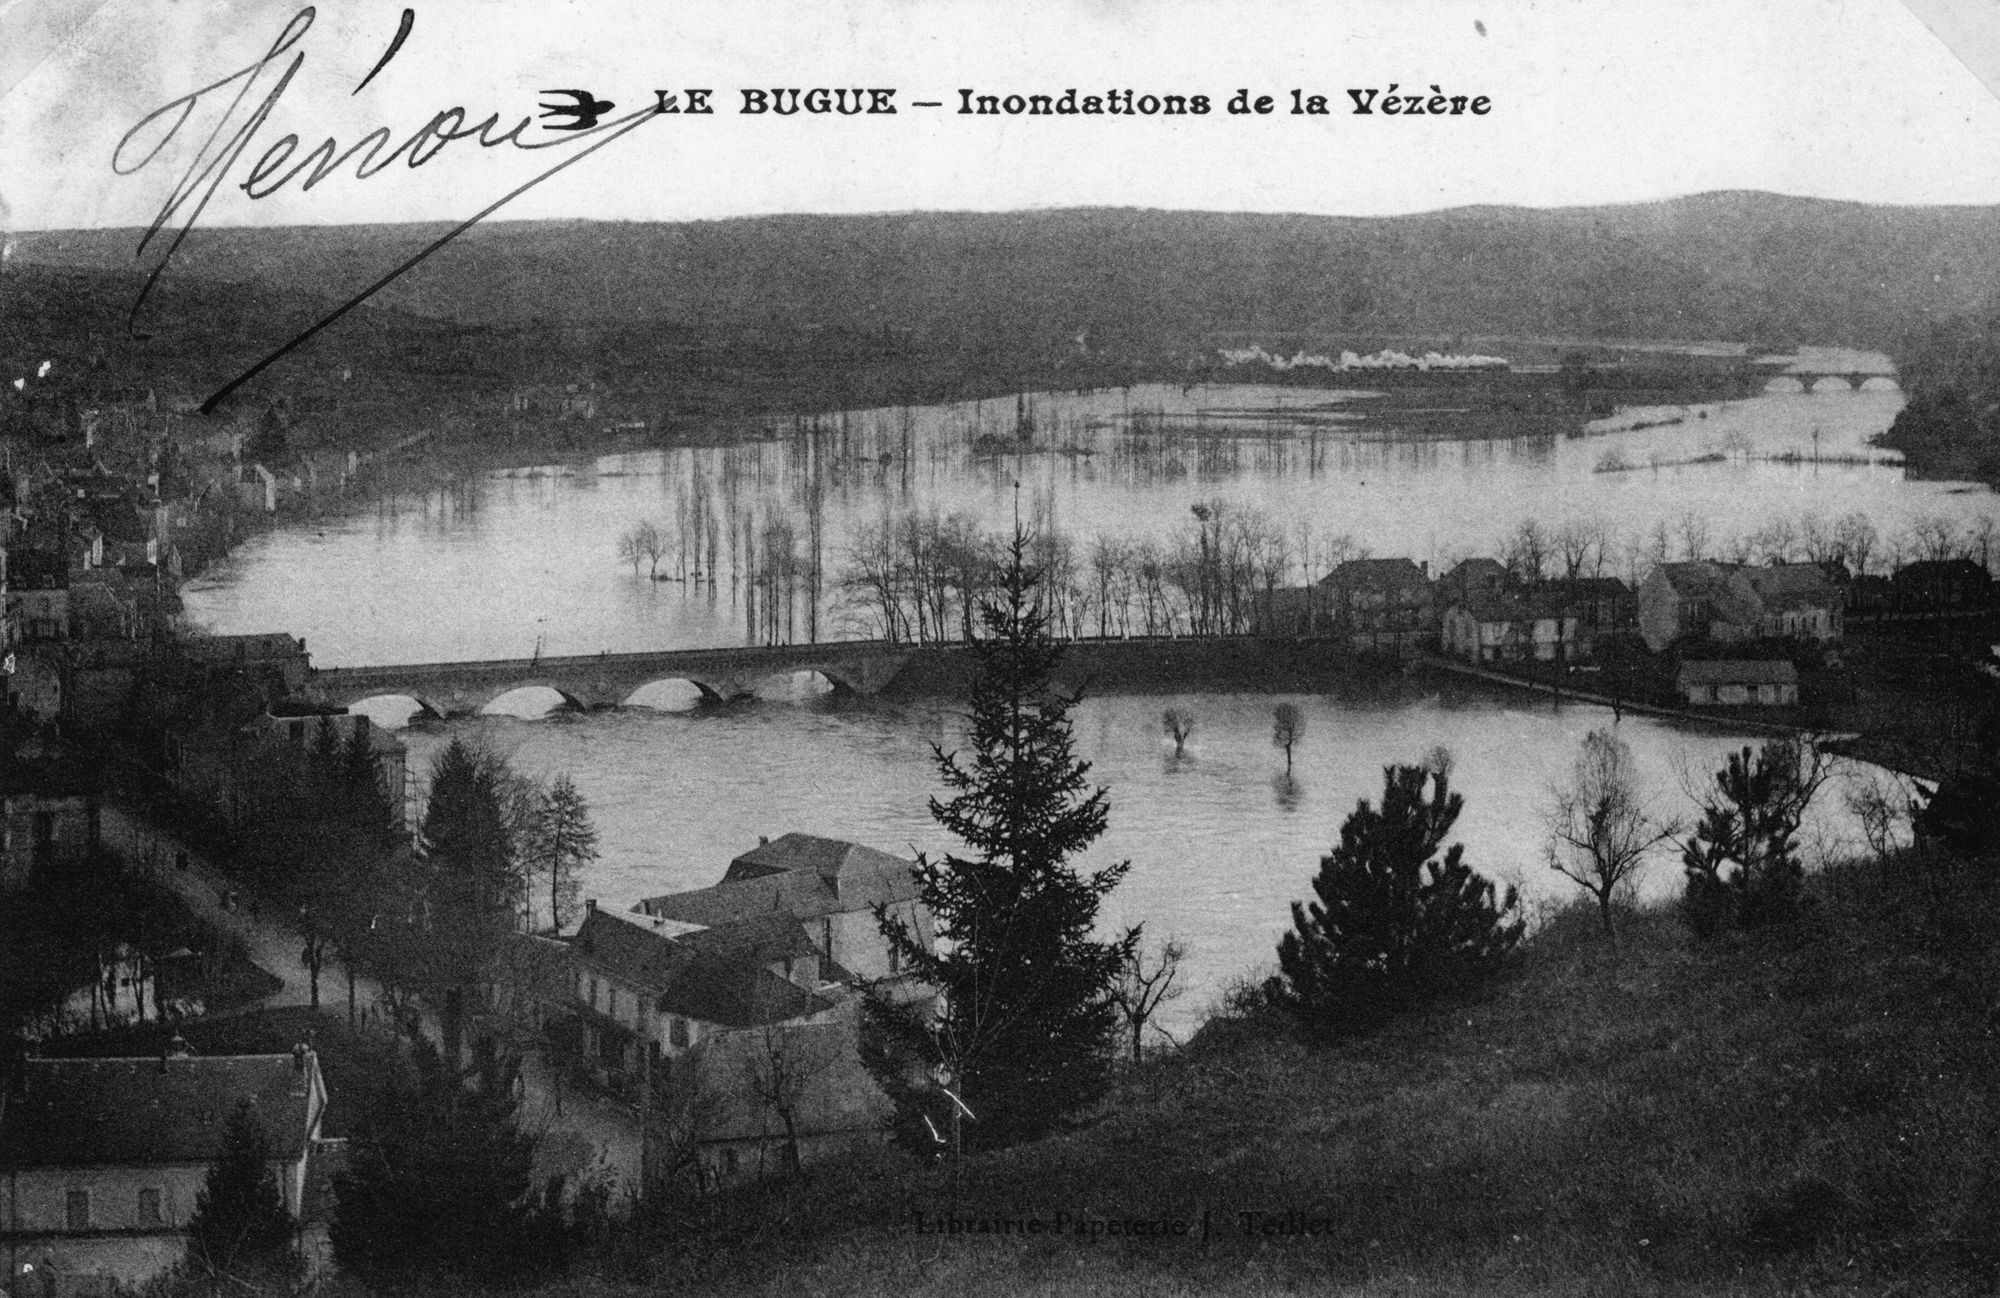 LE BUGUE – Inondations des Quais par la Vézère
Carte postale – Librairie Papeterie – Teillet